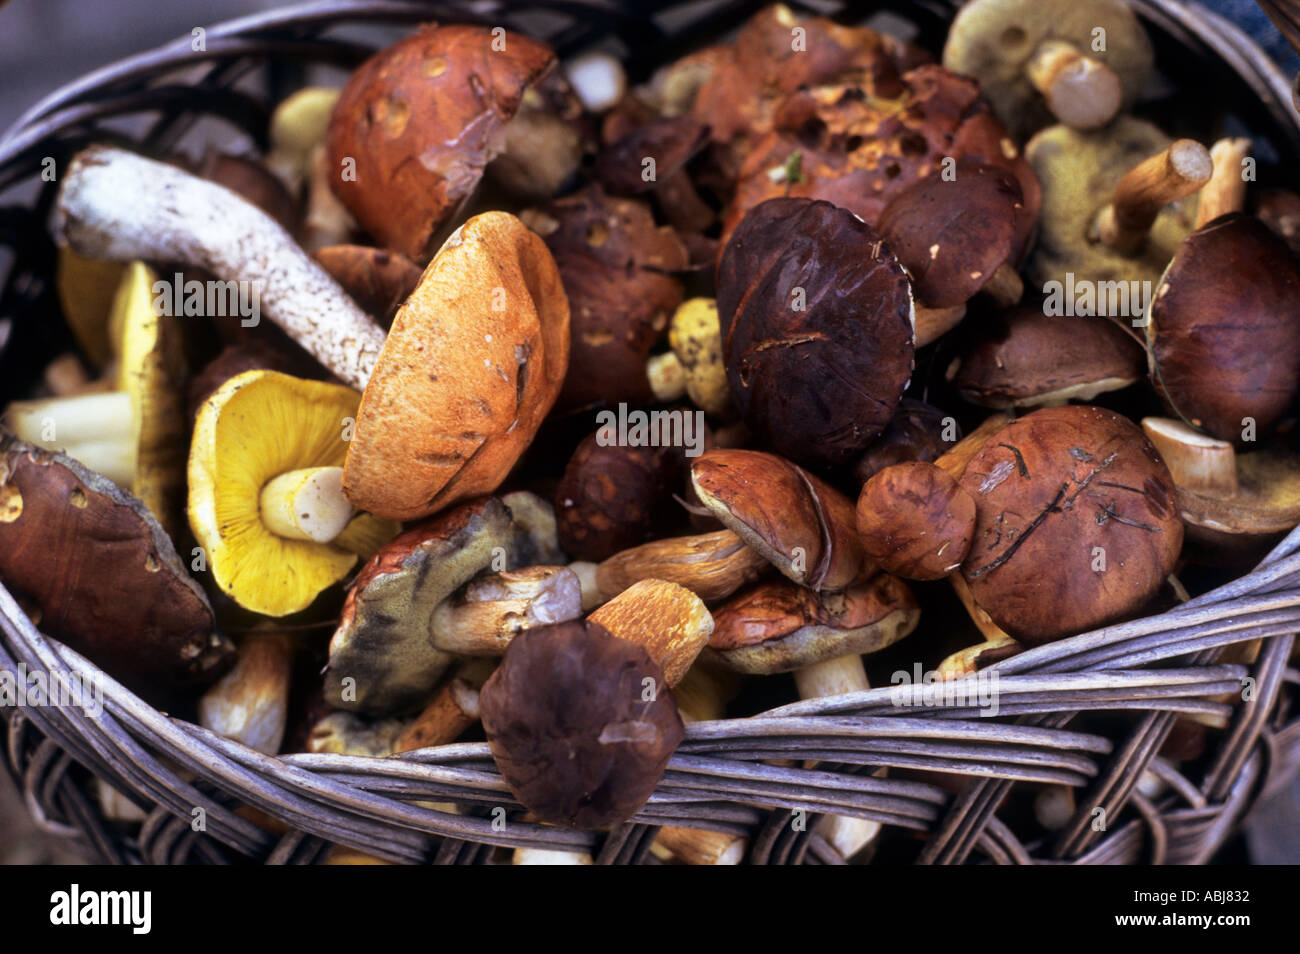 Poland. Basket of Boletus sp. and other edible fungi. Autumn. Stock Photo